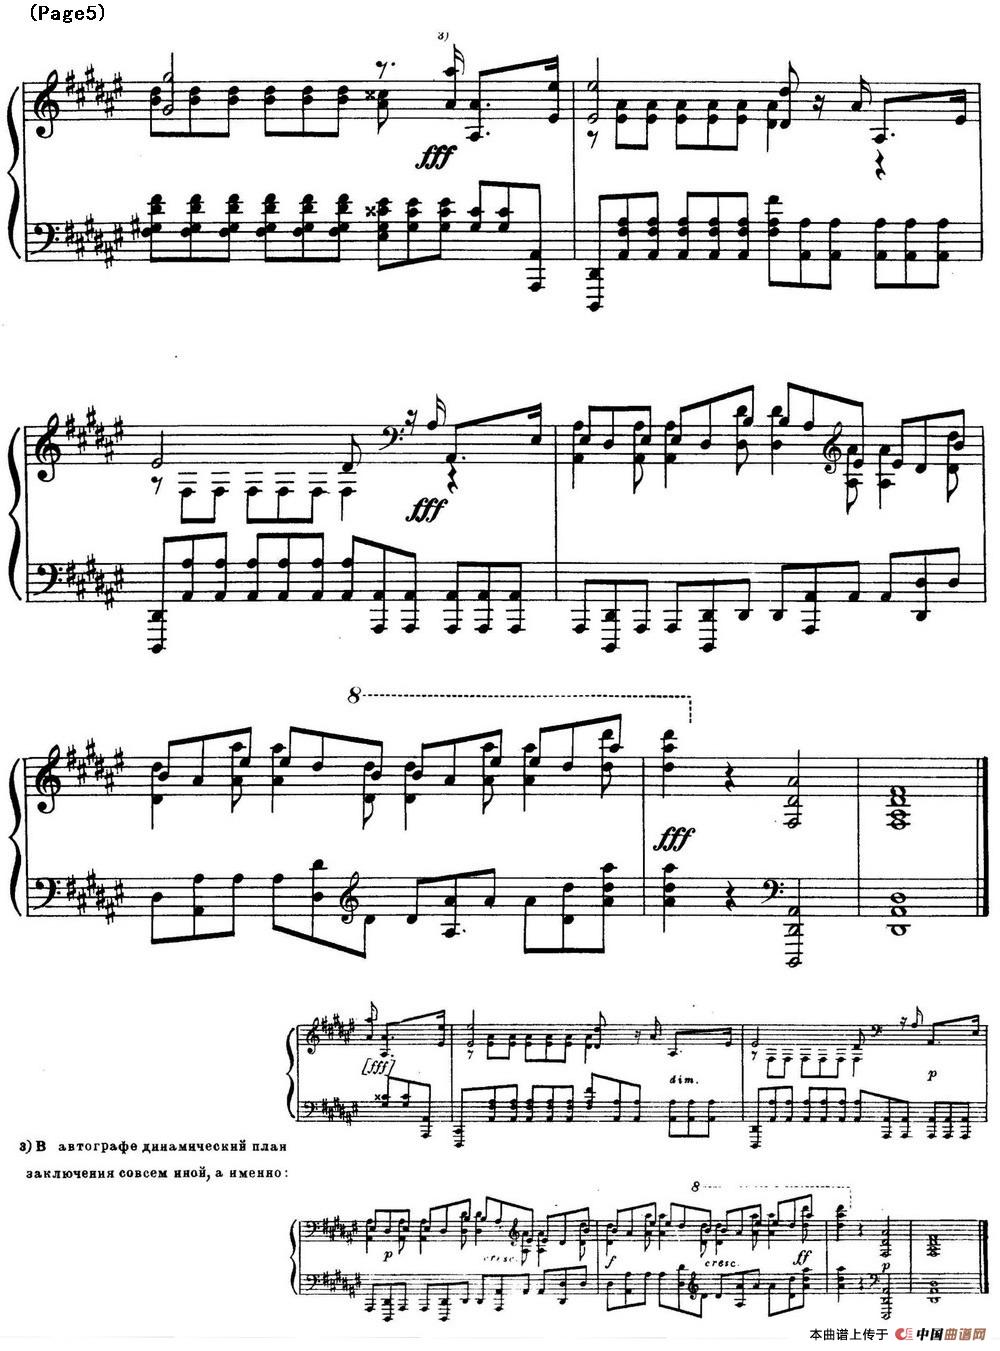 斯克里亚宾12首钢琴练习曲 Op8（No.12 Alexander Scriabin Etudes）(1)_Scriabin Etude Op.8 No.12_页面_6.jpg